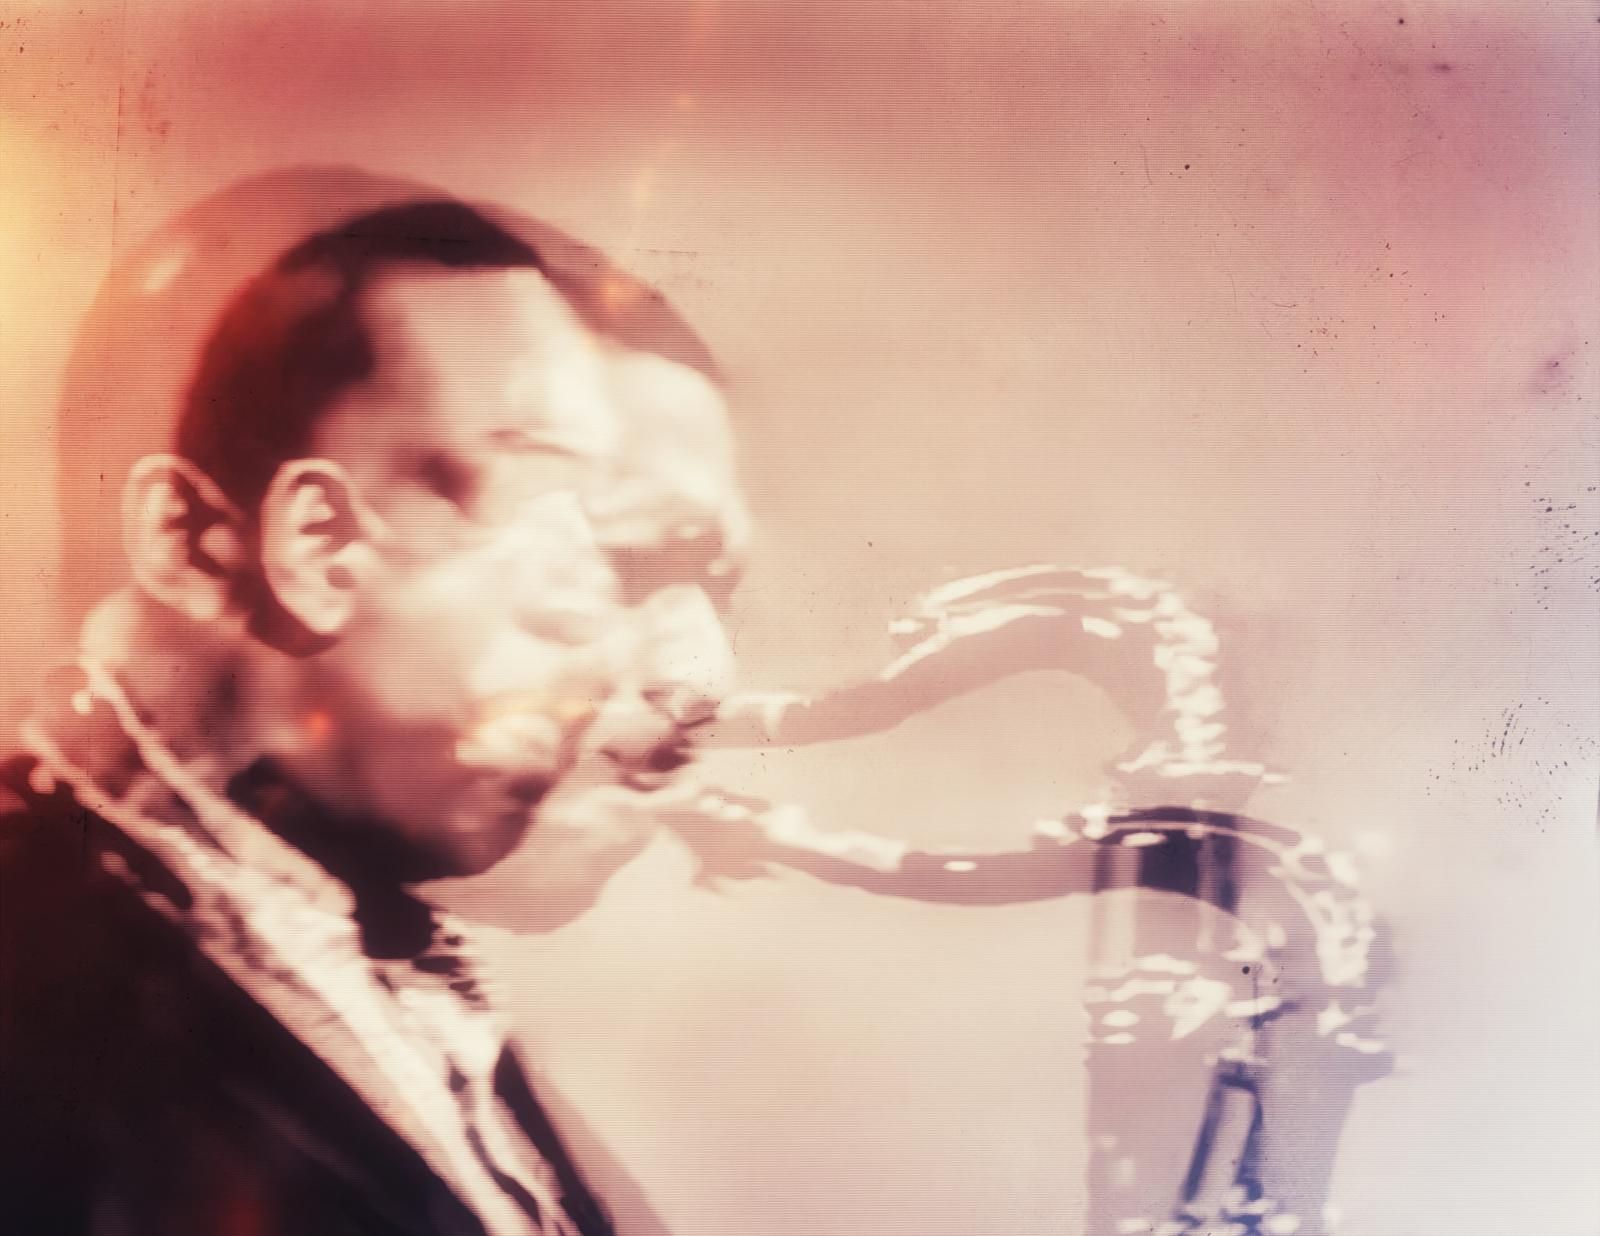 John Coltrane, 1926-1967